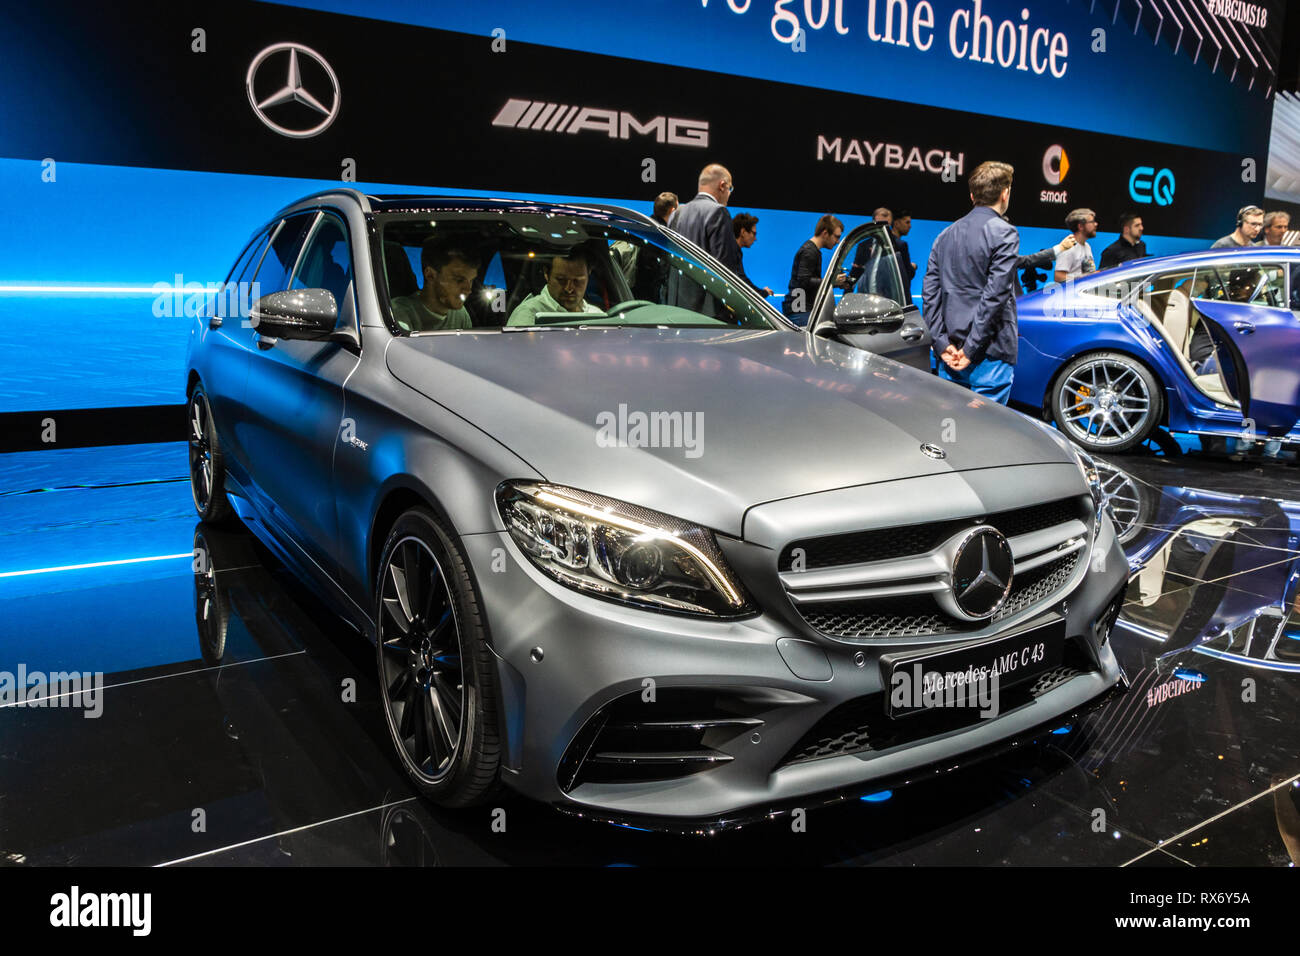 Genf, Schweiz - 6. MÄRZ 2018: Mercedes AMG C43 Auto auf dem 88. Internationalen Automobilsalon in Genf präsentiert. Stockfoto